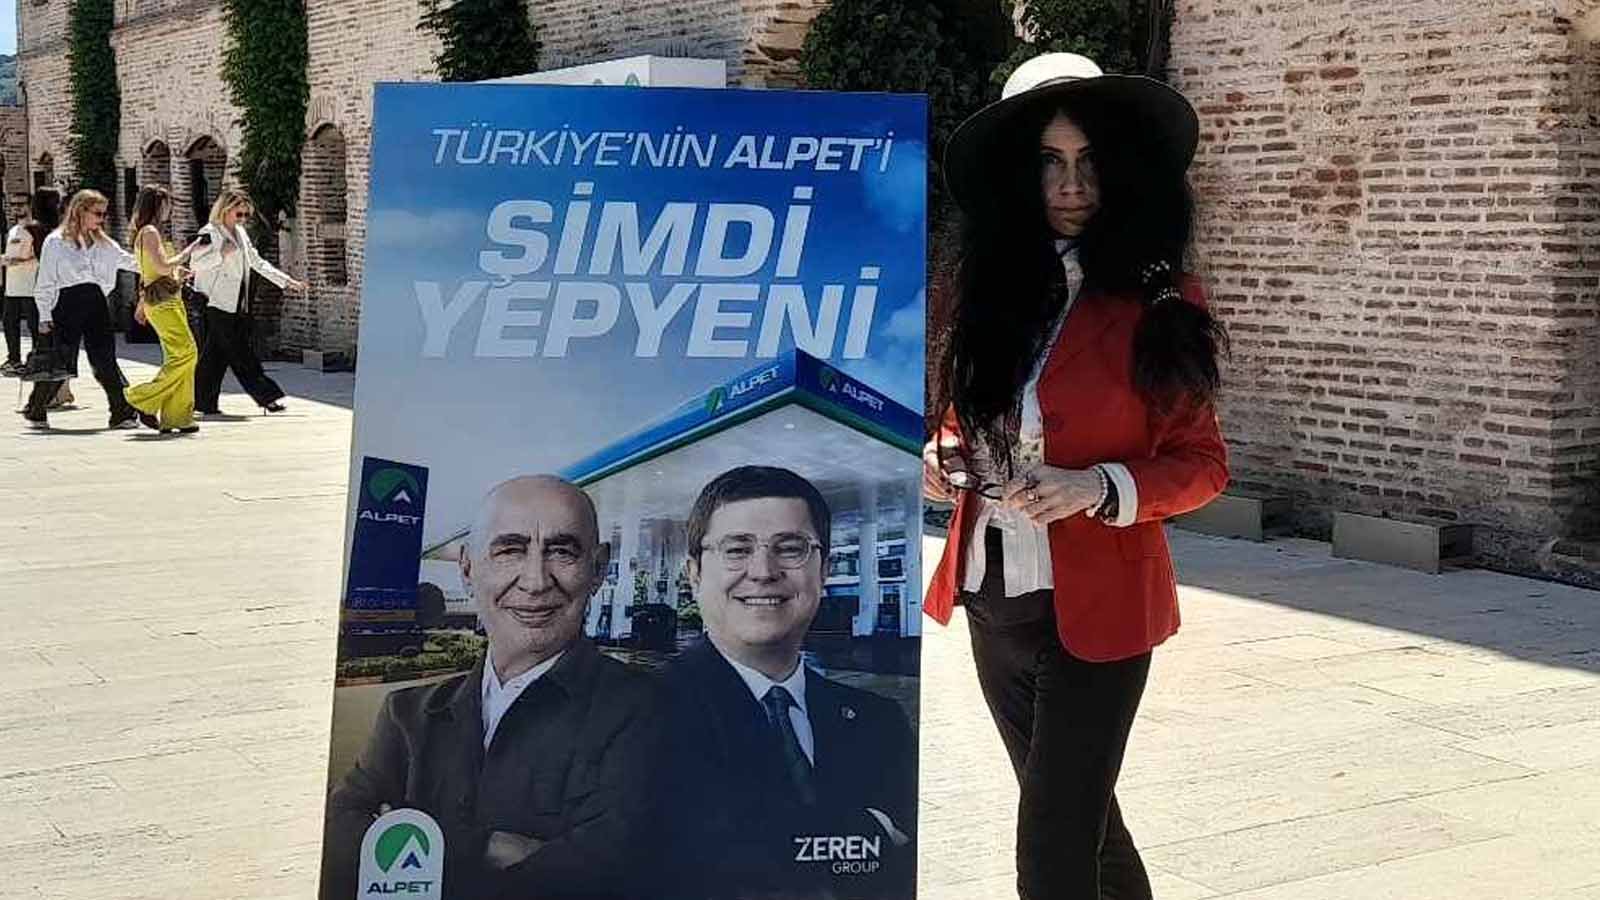 Esma Sultan Yalısında Yeni Alpet Vizyonu Çiğdem Yorgancıoğlu